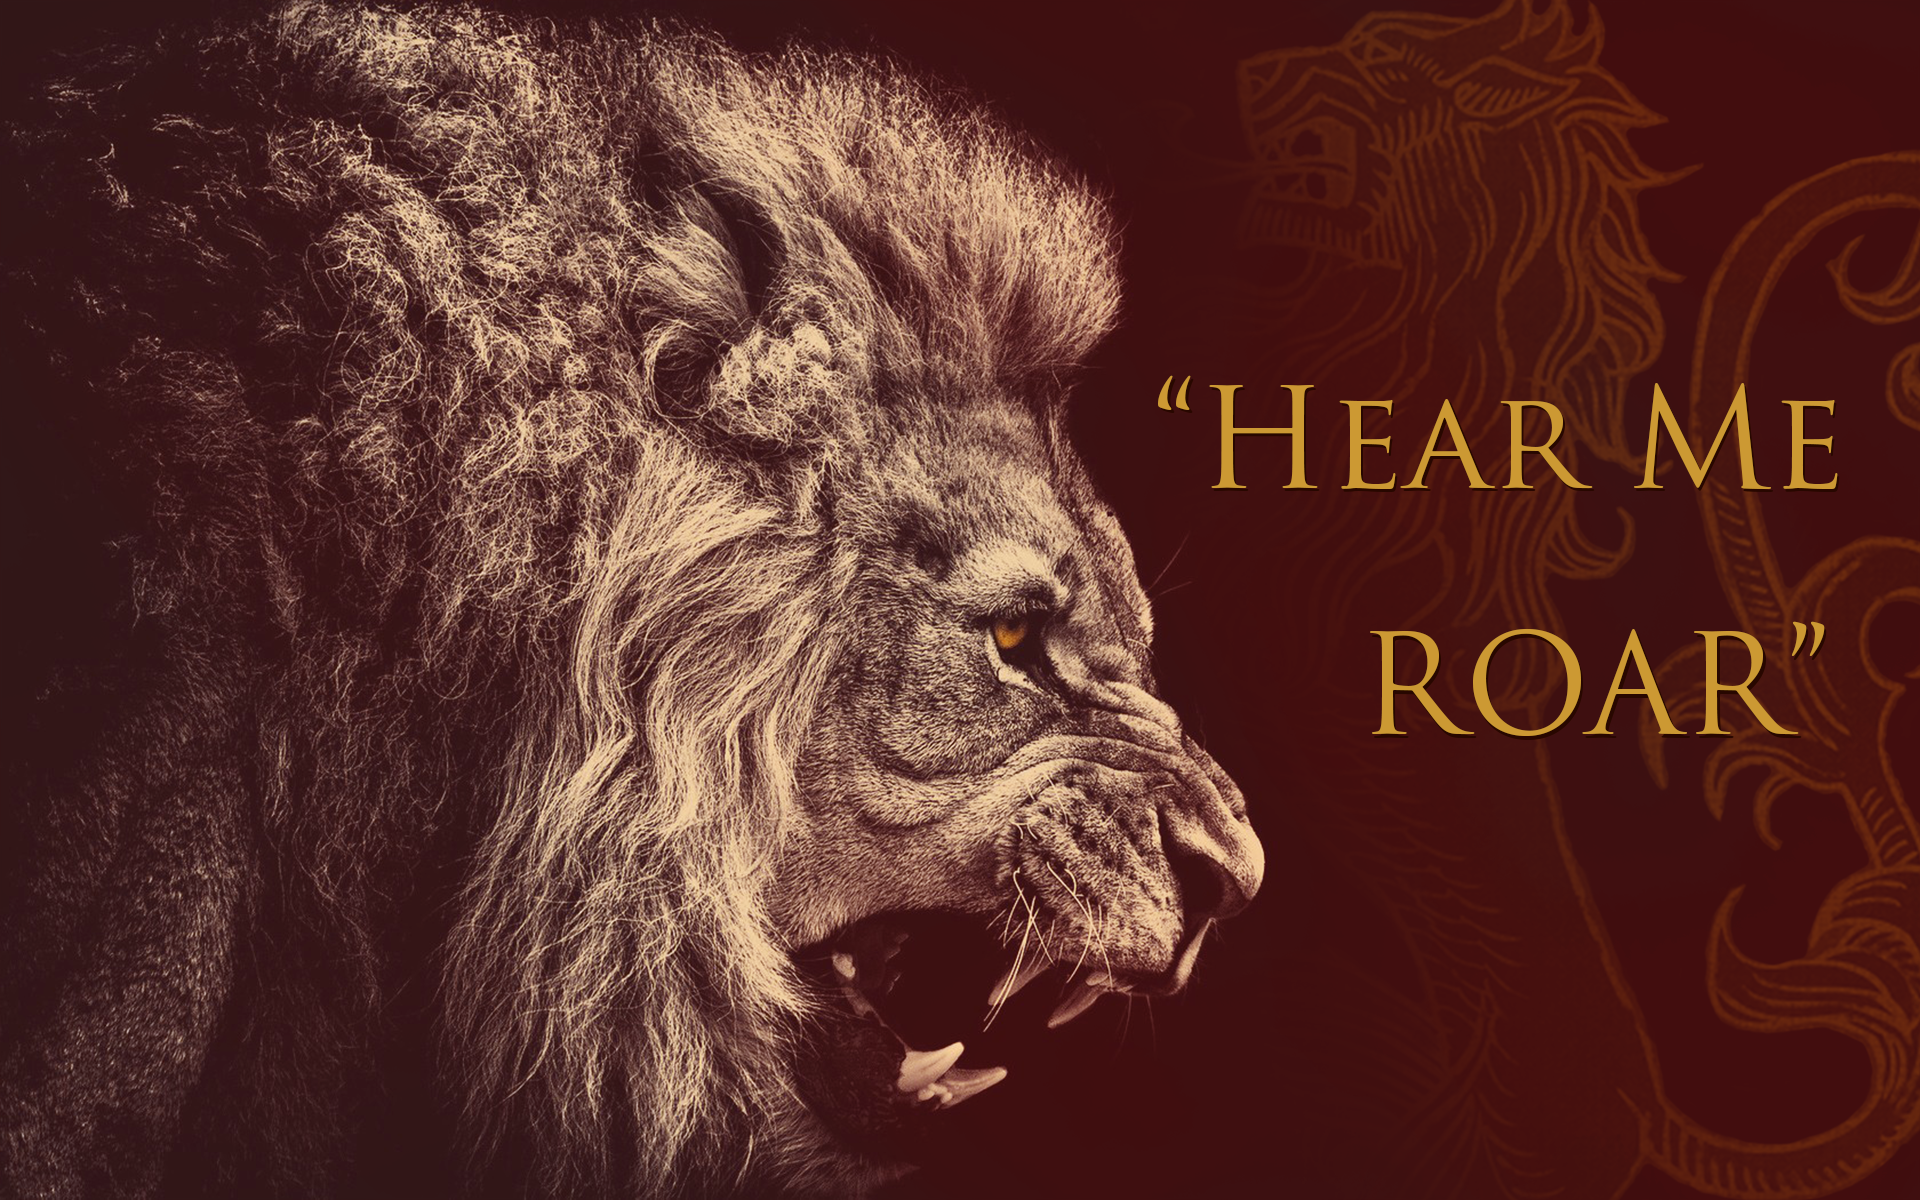 Lannisters Hear Me Roar , HD Wallpaper & Backgrounds